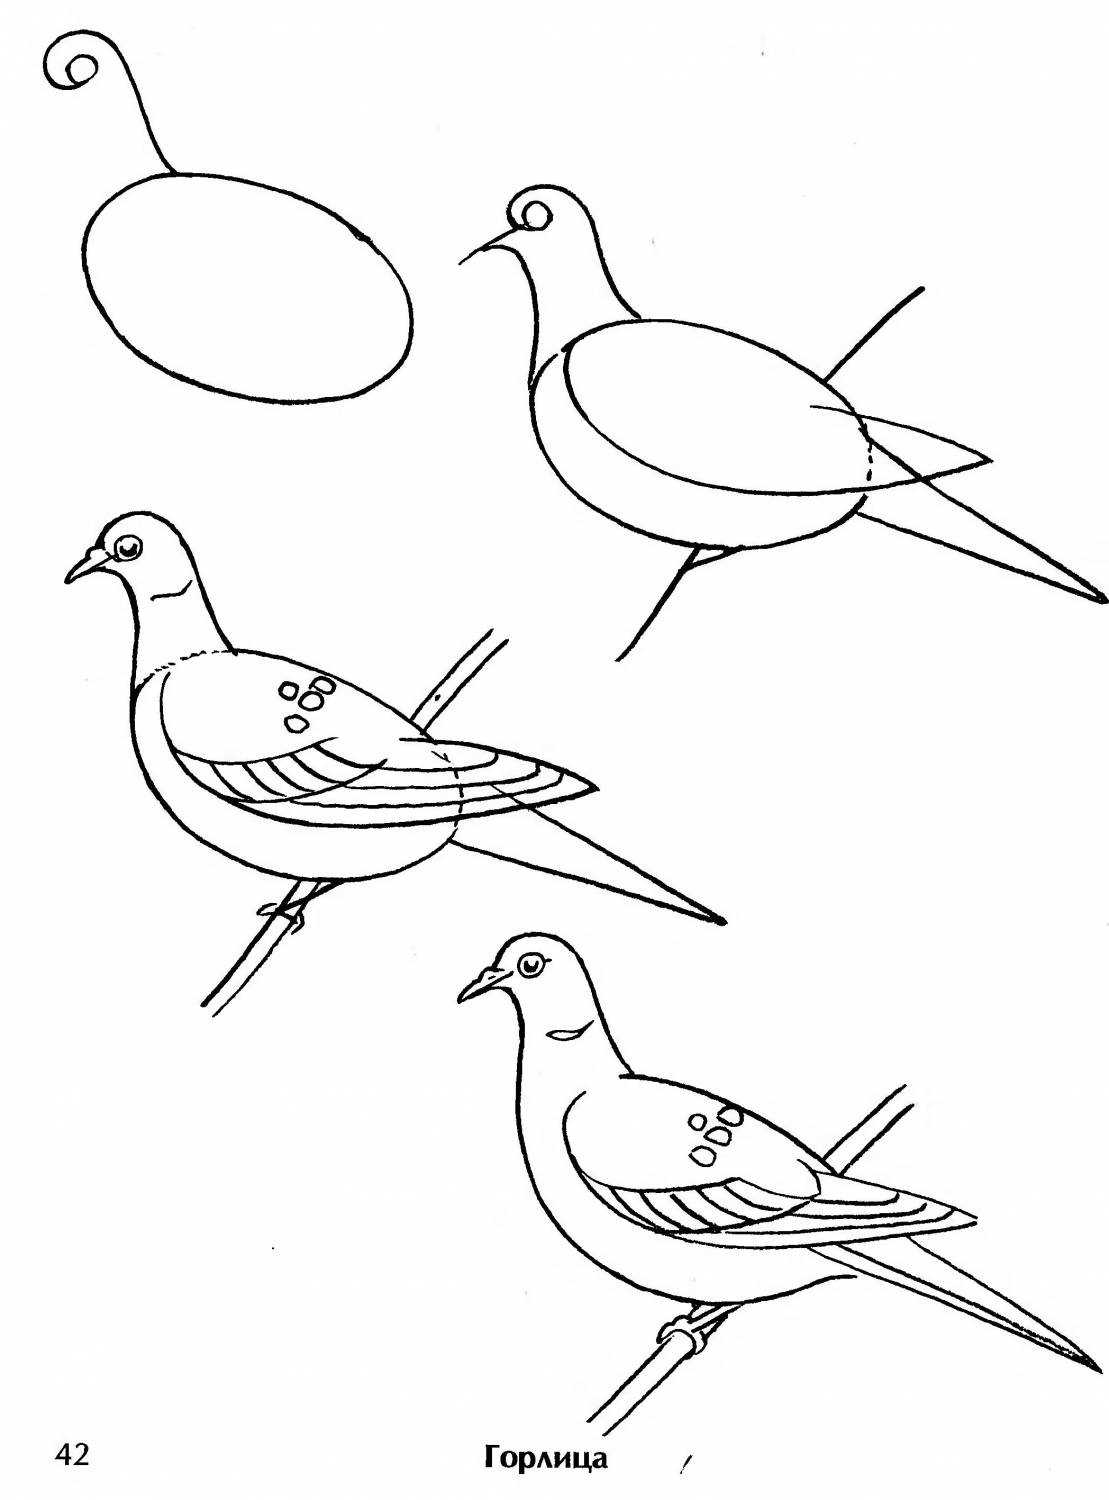 Как нарисовать голубя на день победы 9 мая карандашами или гуашью поэтапно